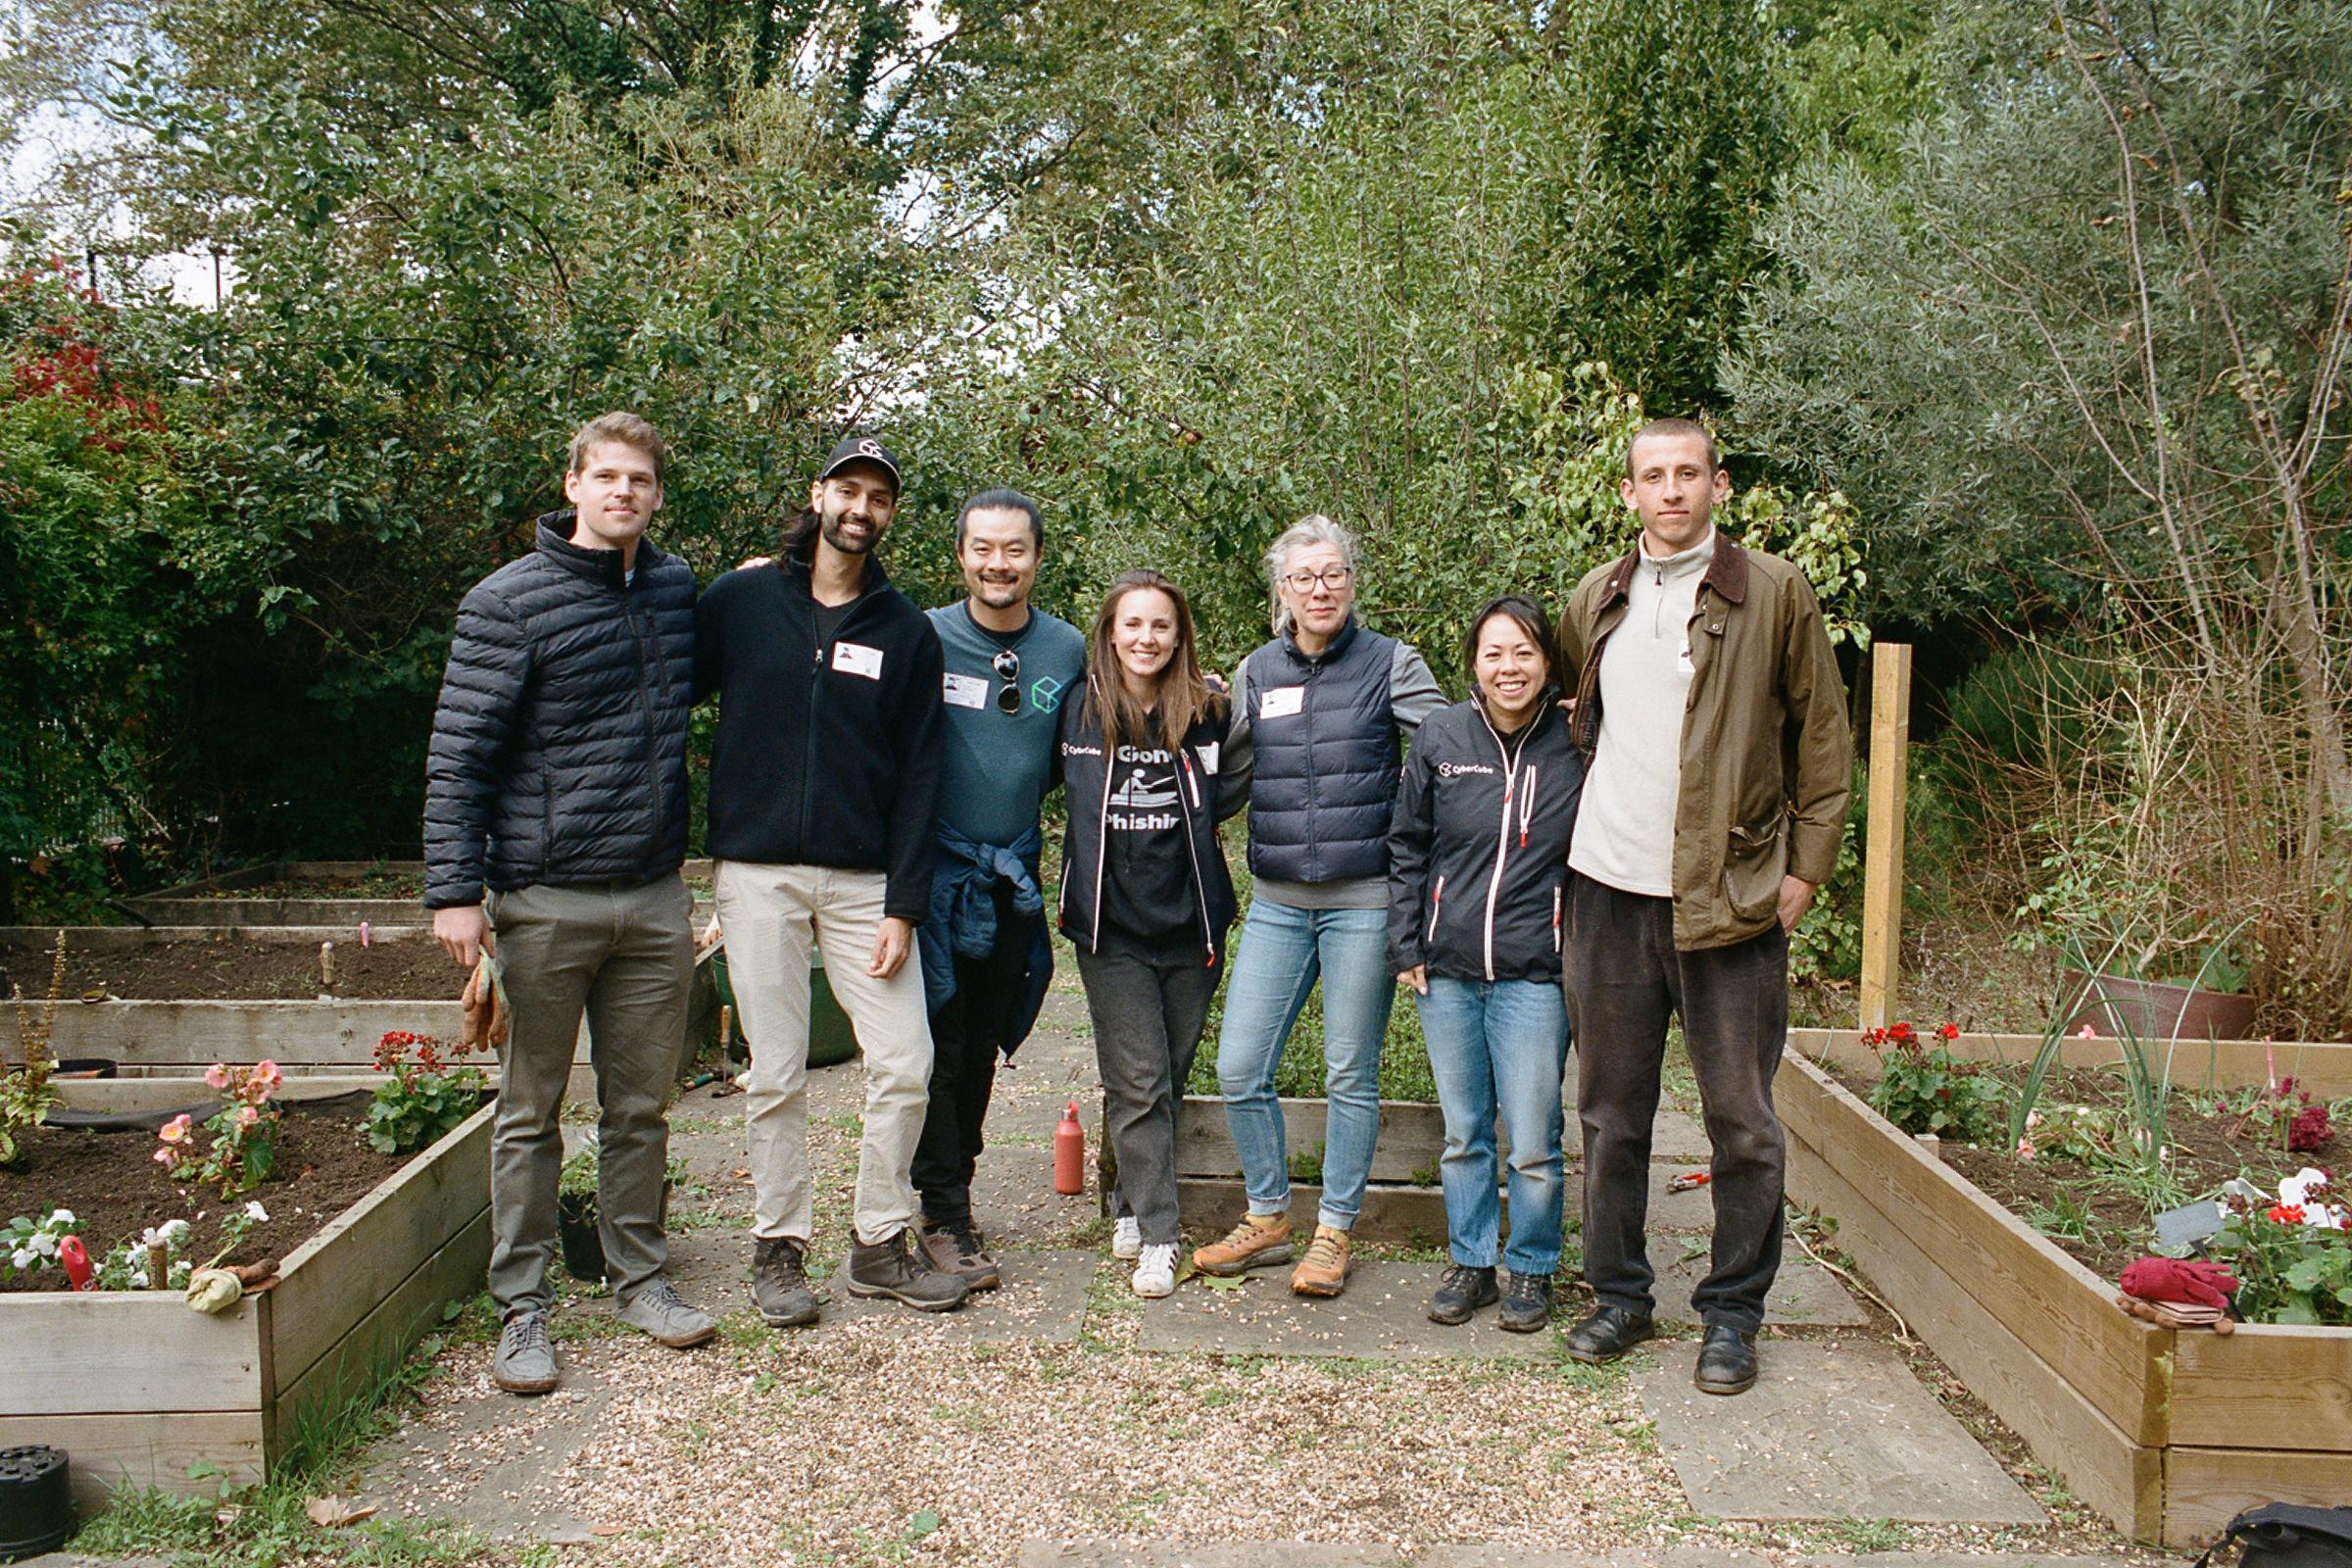 Group of volunteers standing in a school garden.